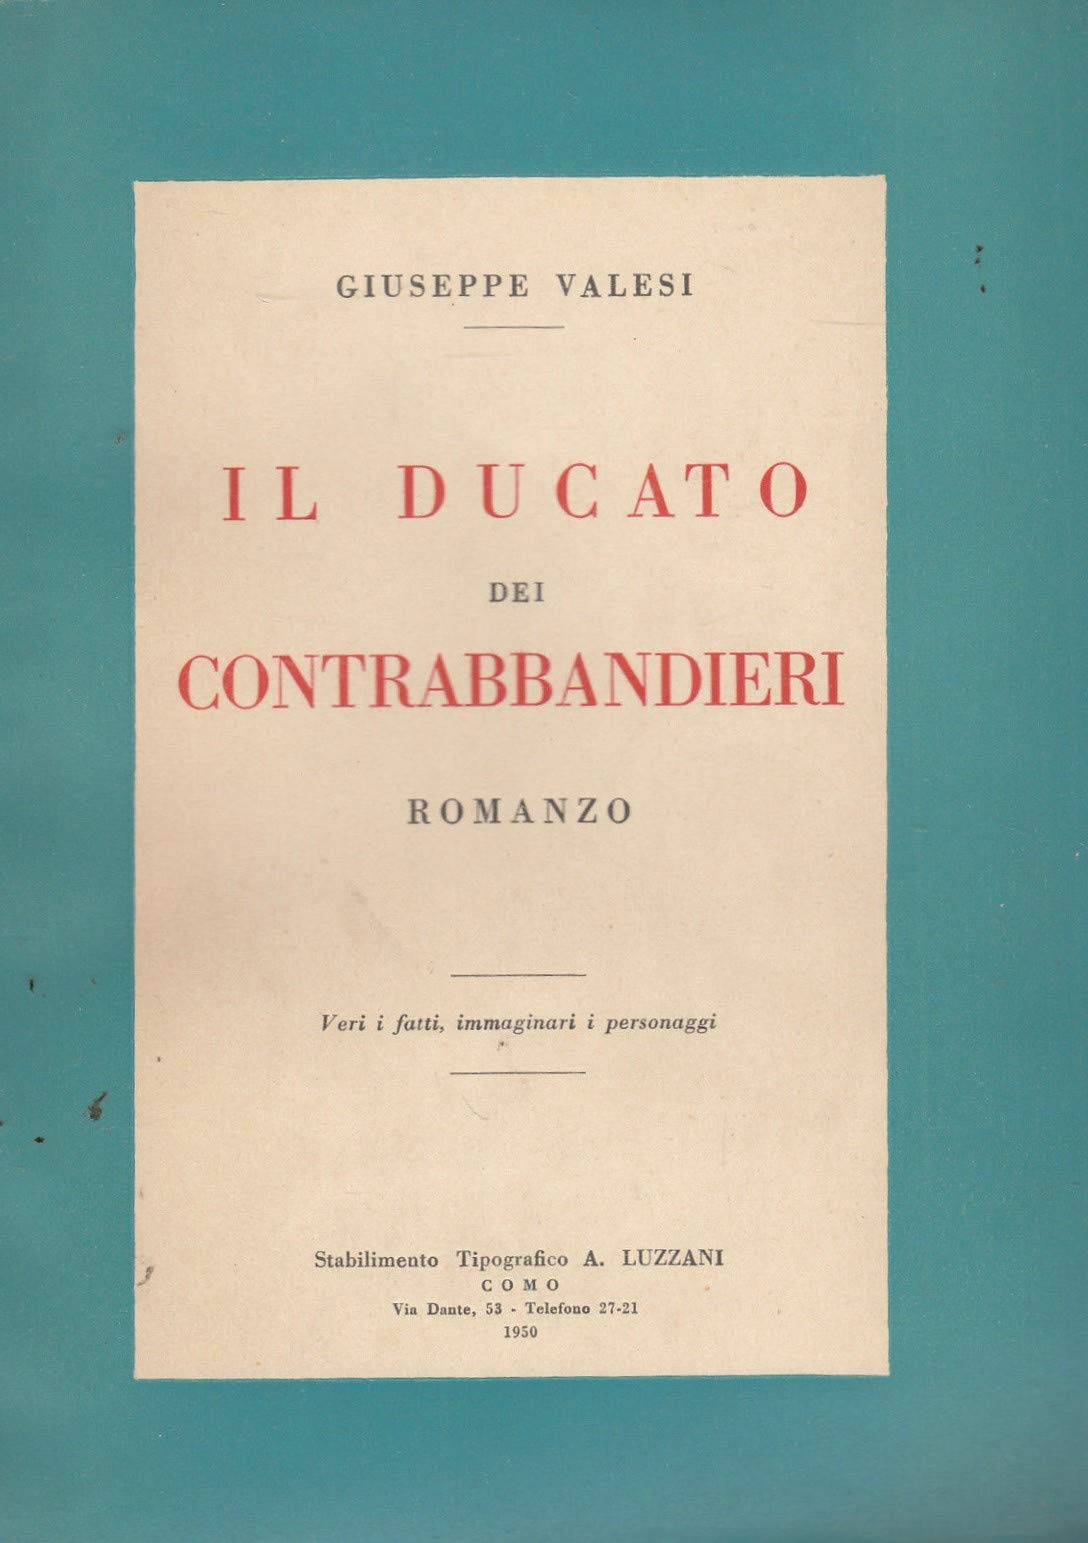 Libri Valesi Giuseppe - Il Ducato Dei Contrabbandieri. Veri I Fatti, Immaginari I Personaggi NUOVO SIGILLATO SUBITO DISPONIBILE